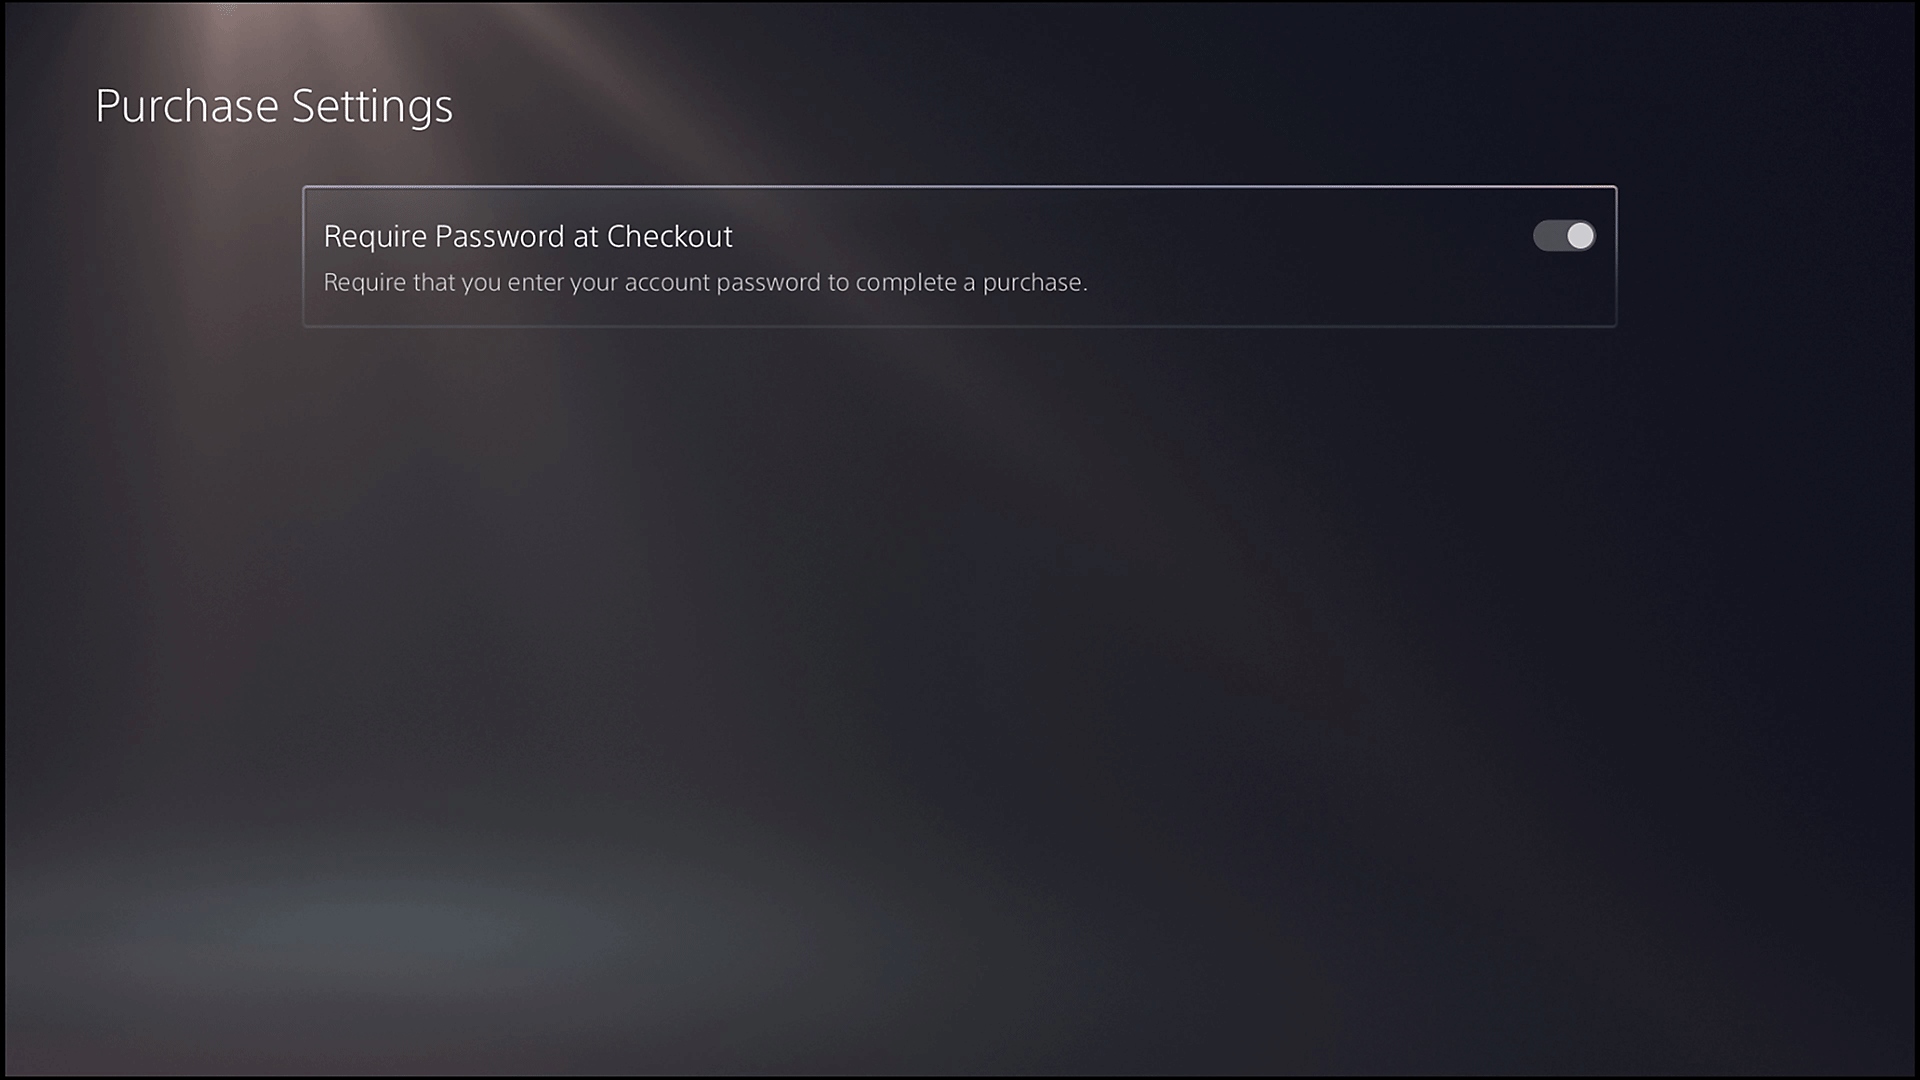 Οθόνη "Ρυθμίσεις αγοράς" του PS5 με την επιλογή "Απαιτείται κωδικός πρόσβασης" στο checkout